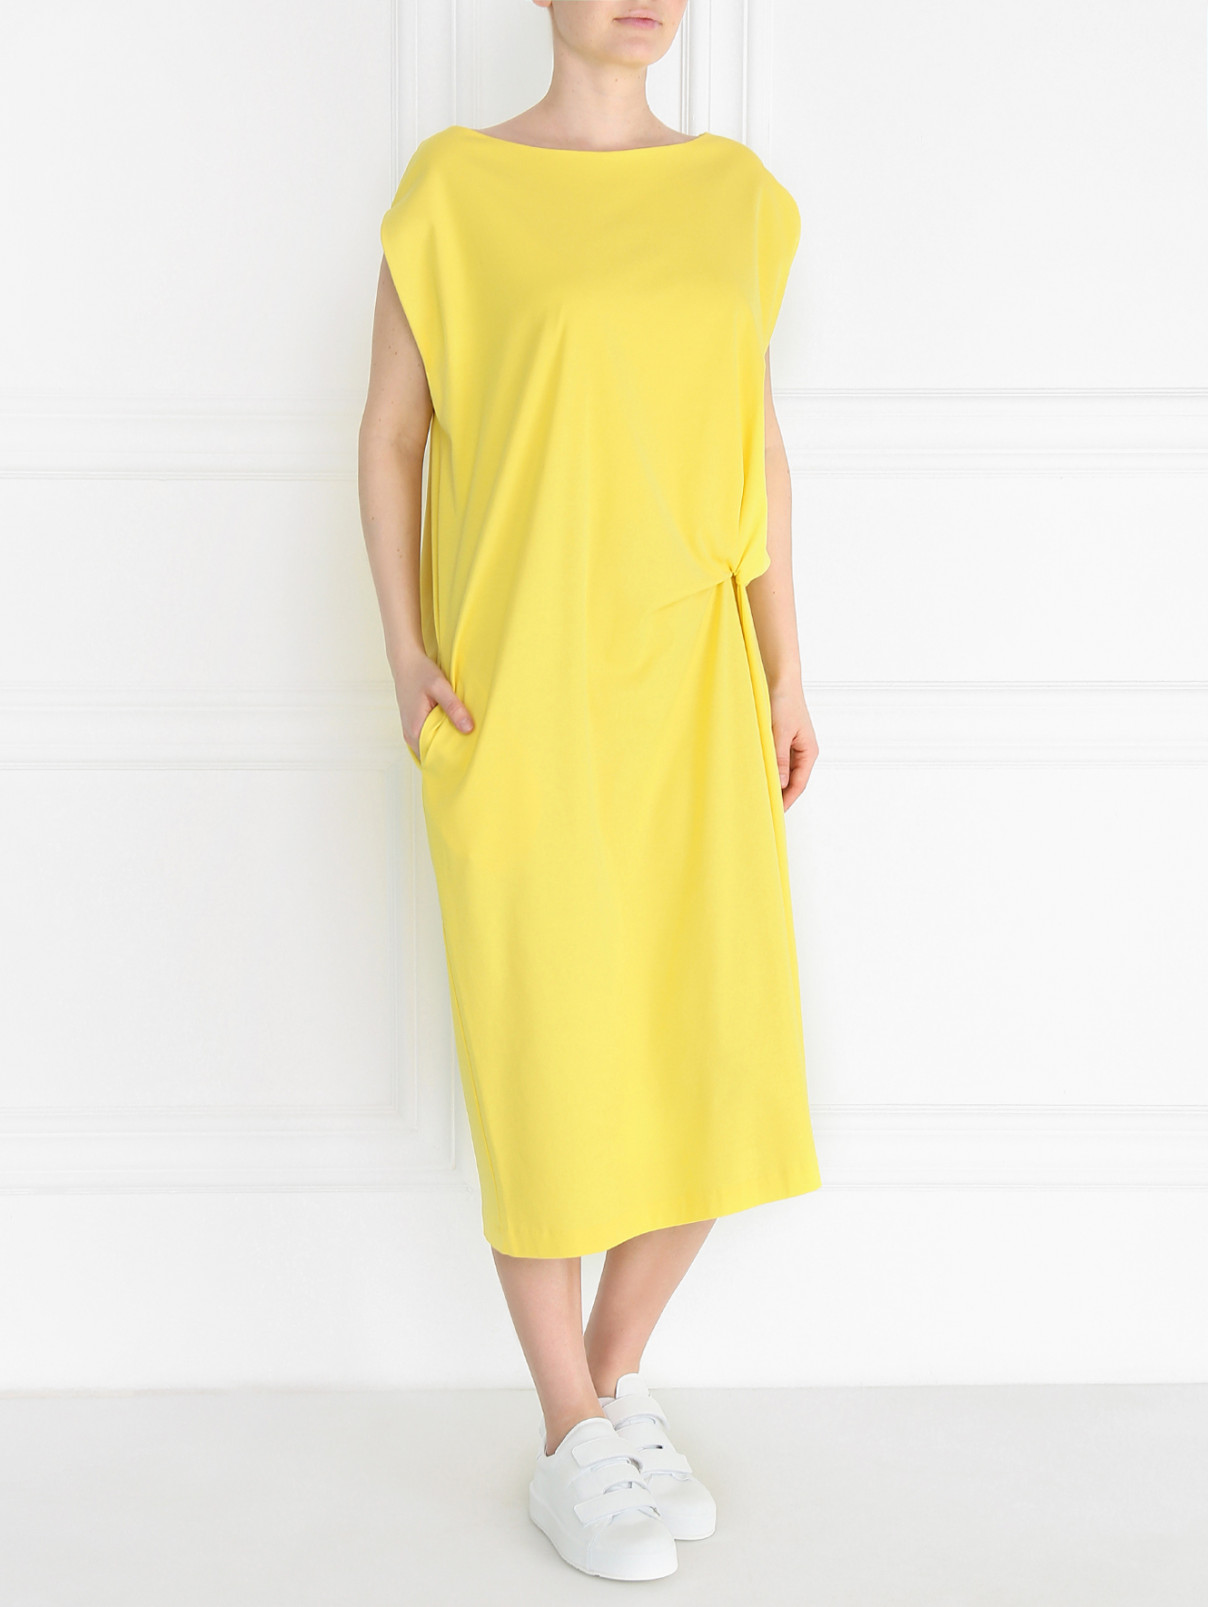 Трикотажное платье-миди из хлопка Jil Sander  –  Модель Общий вид  – Цвет:  Желтый